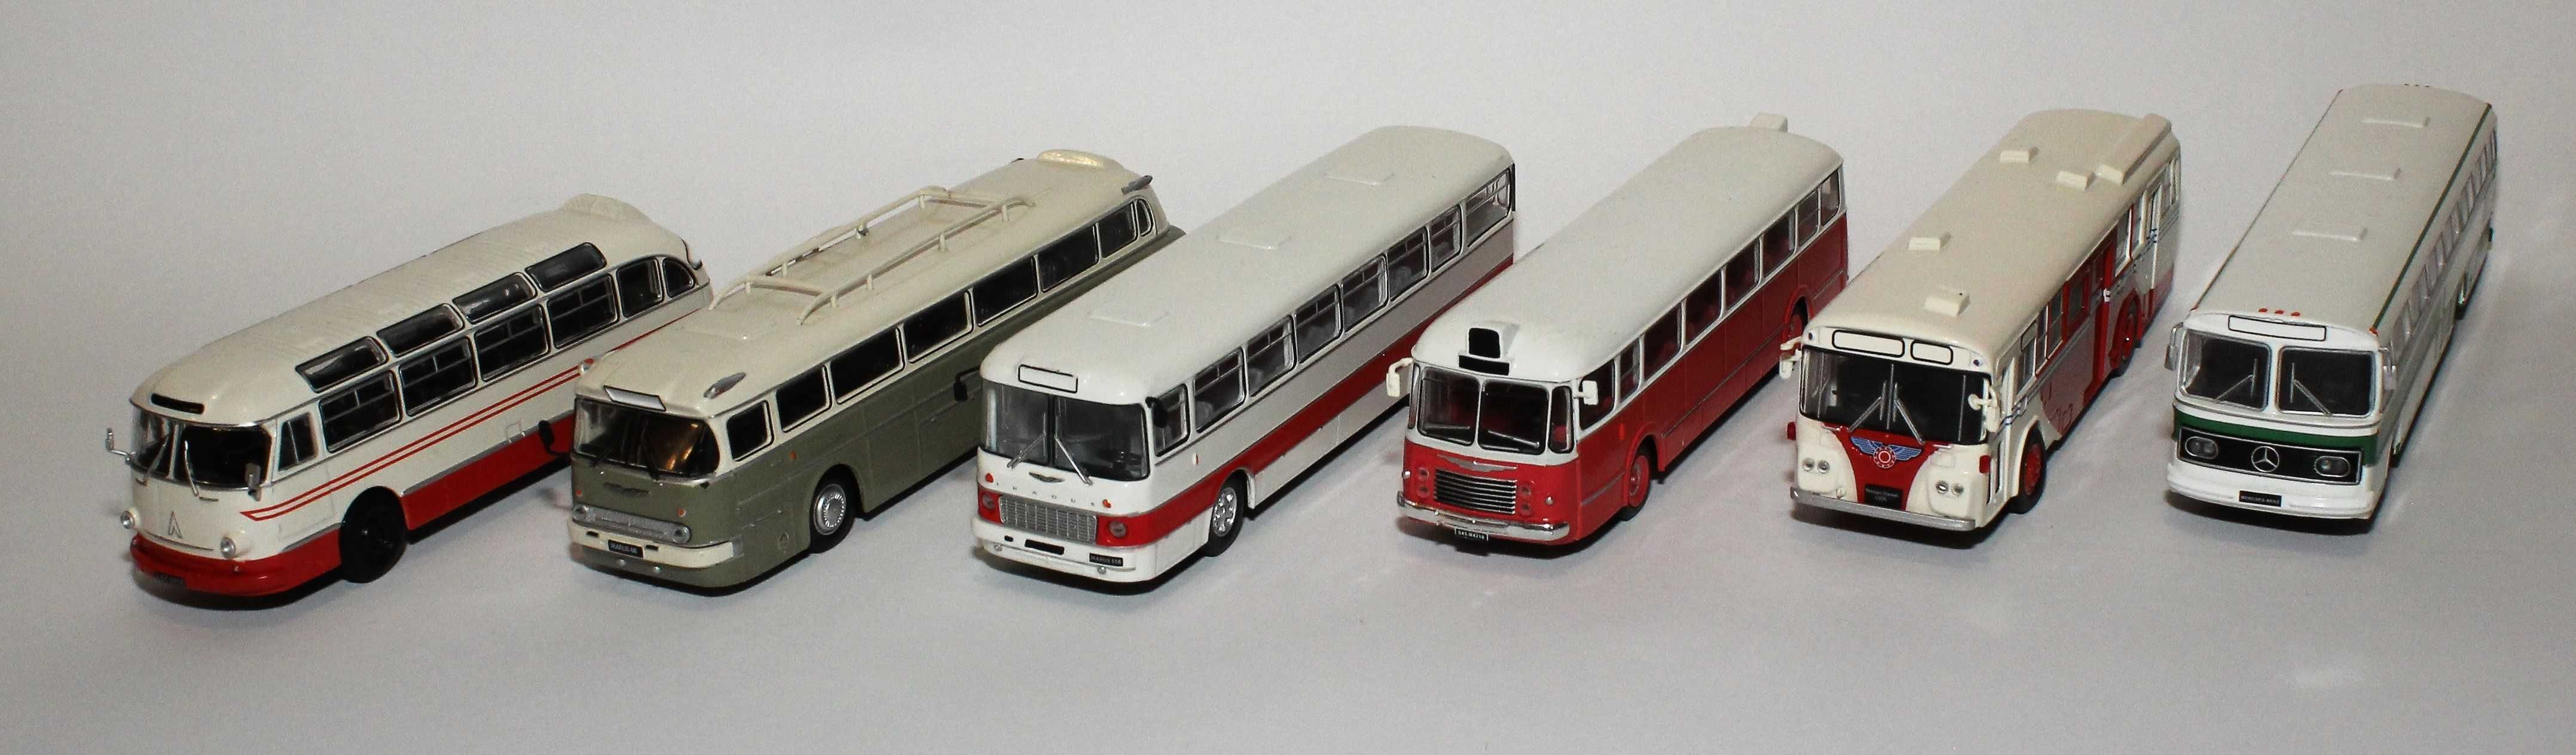 Kultowe autobusy Prl-u. Kolekcja DeAgostini.